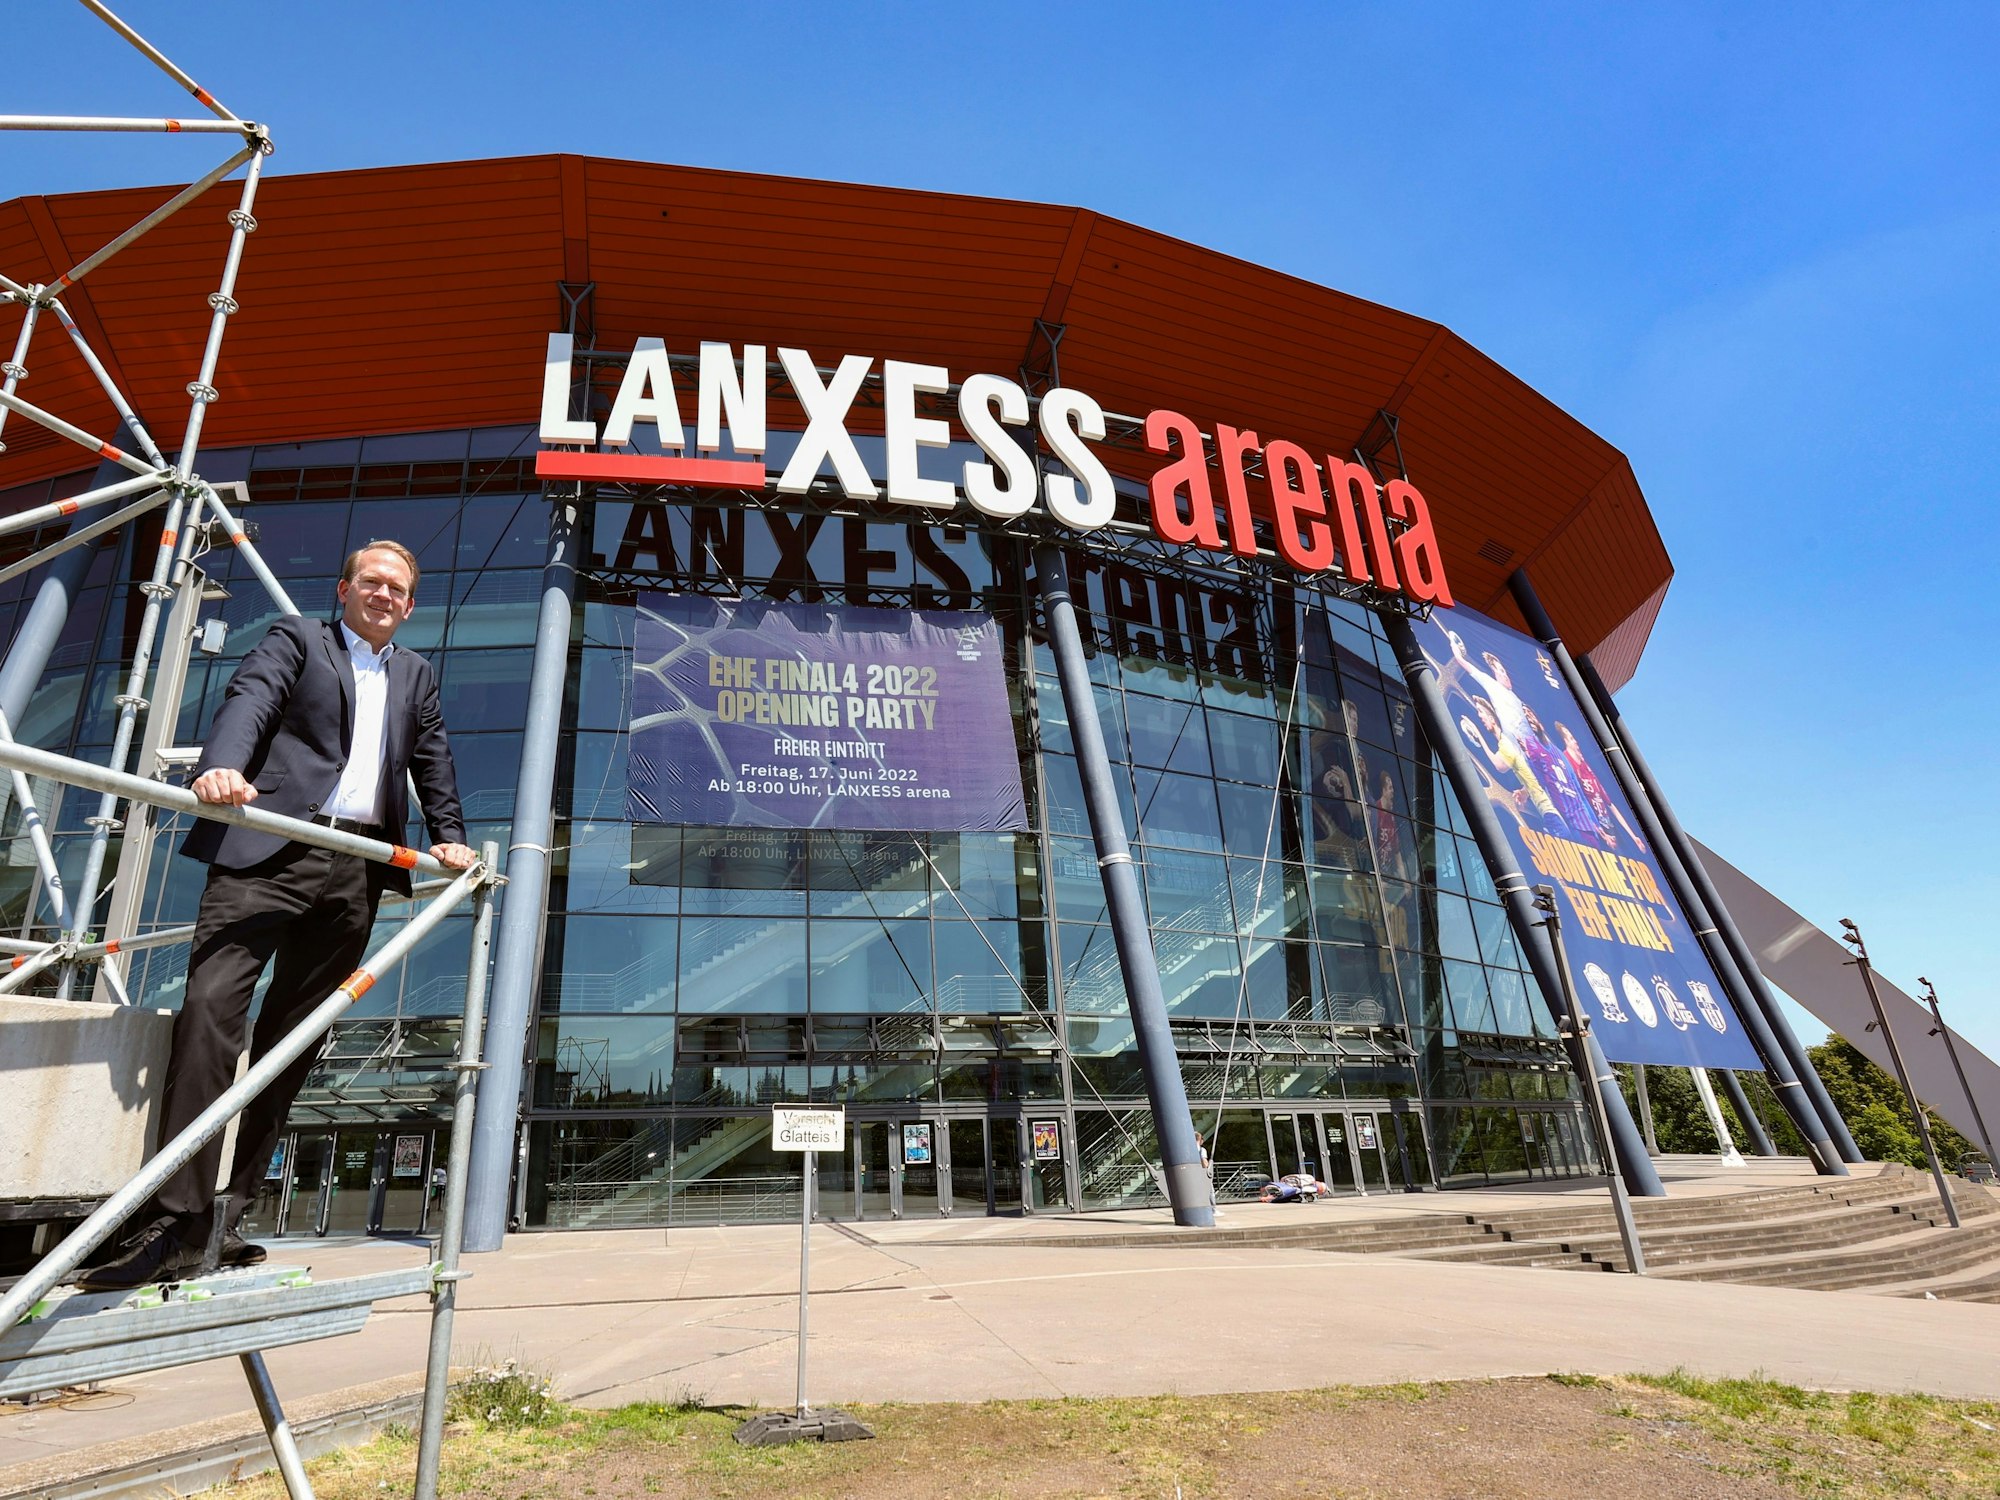 Stefan Löcher, Chef der Lanxess-Arena in Köln, steht vor der Multifunktionsarena.